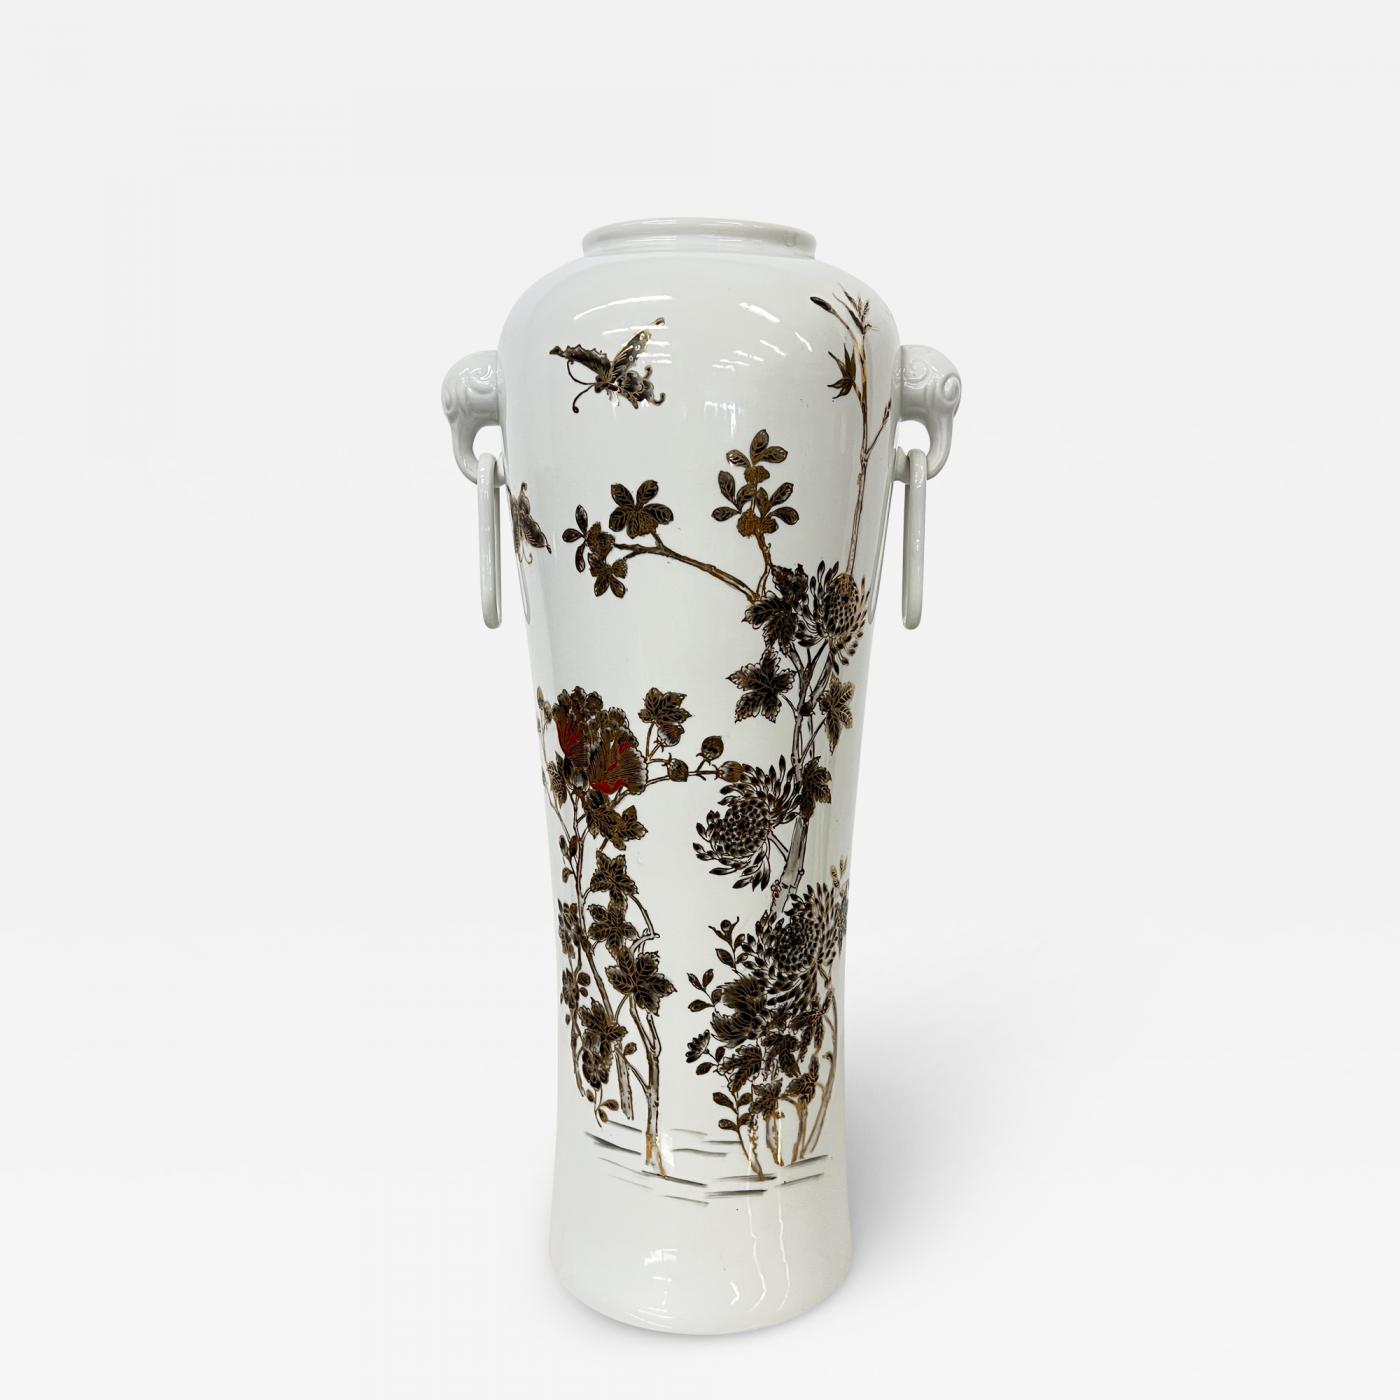 Illusion Utænkelig Indvandring Lovely Y T Japanese Porcelain Vase Lush Floral Hand Decorated in Hong Kong